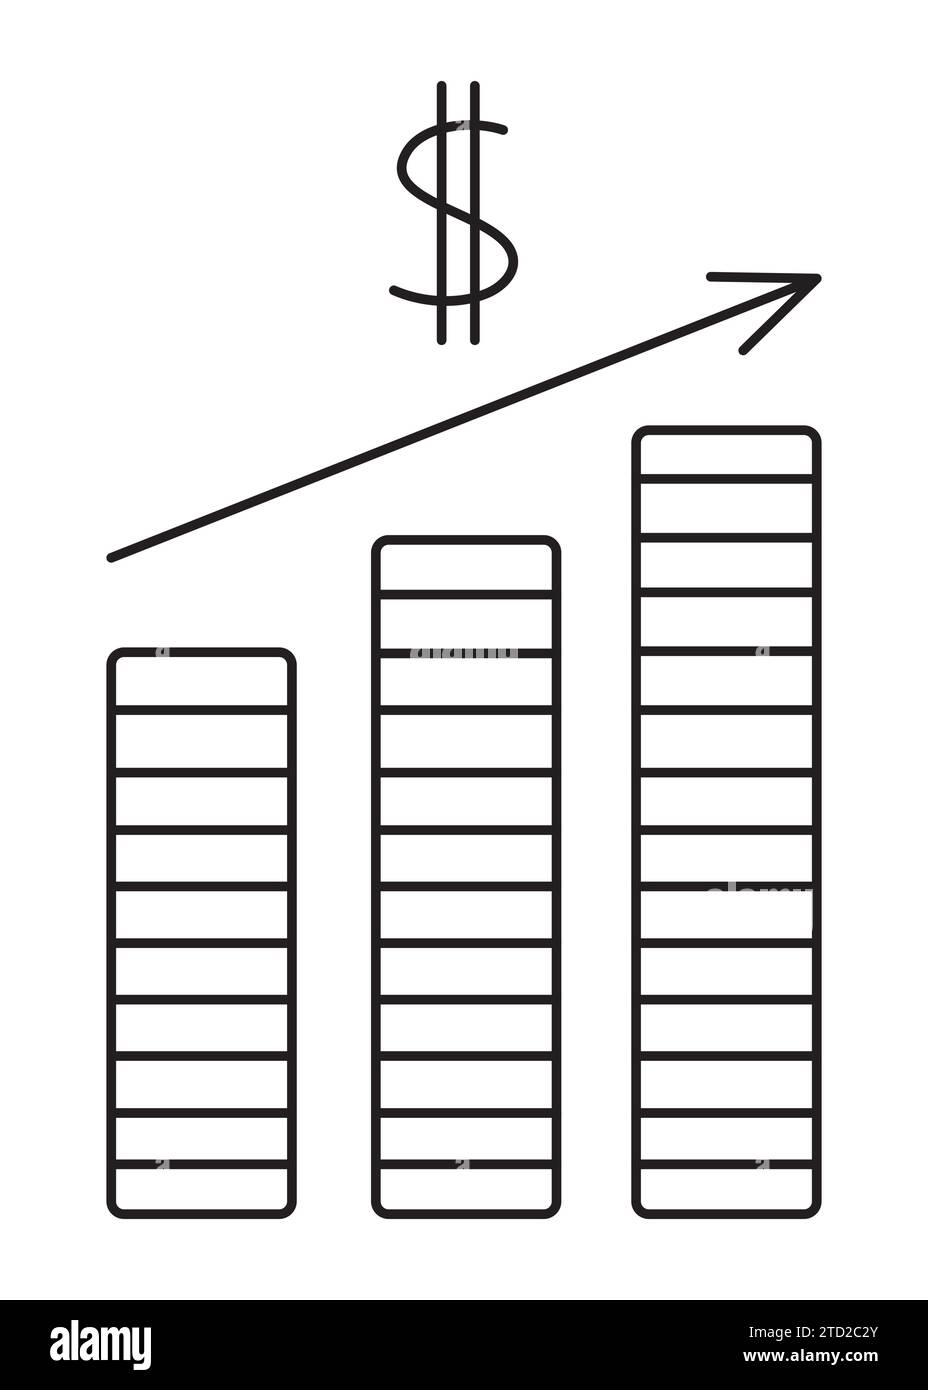 Diagramme financier, bénéfice en dollars. Illustration vectorielle simple de ligne noire de la croissance des salaires et de l'augmentation du revenu Illustration de Vecteur